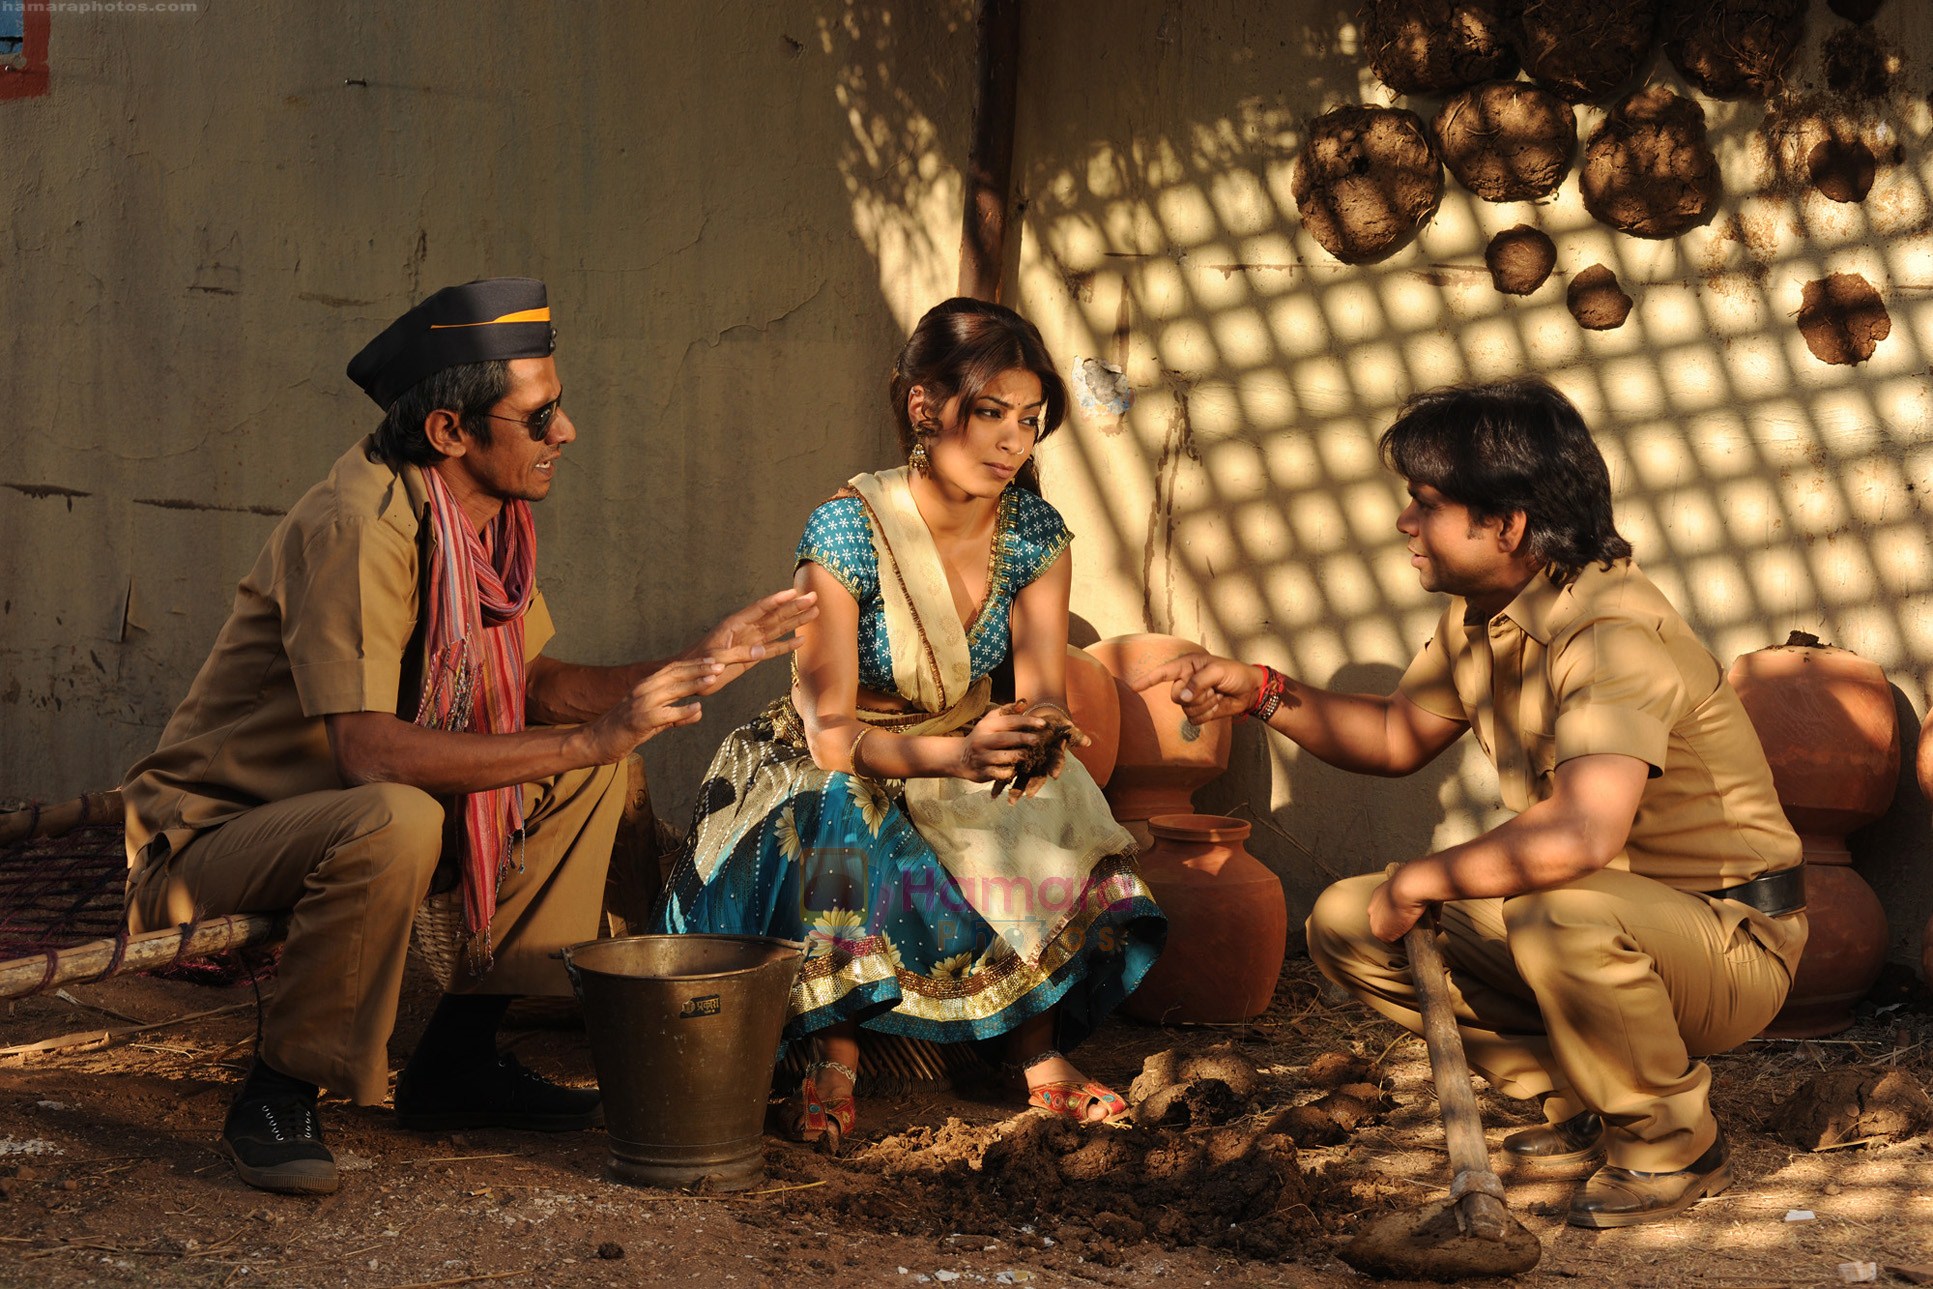 Vijay Raaz, Shweta Keswani, Rajpal Yadav in Still from the movie Bin Bulaye Baraati